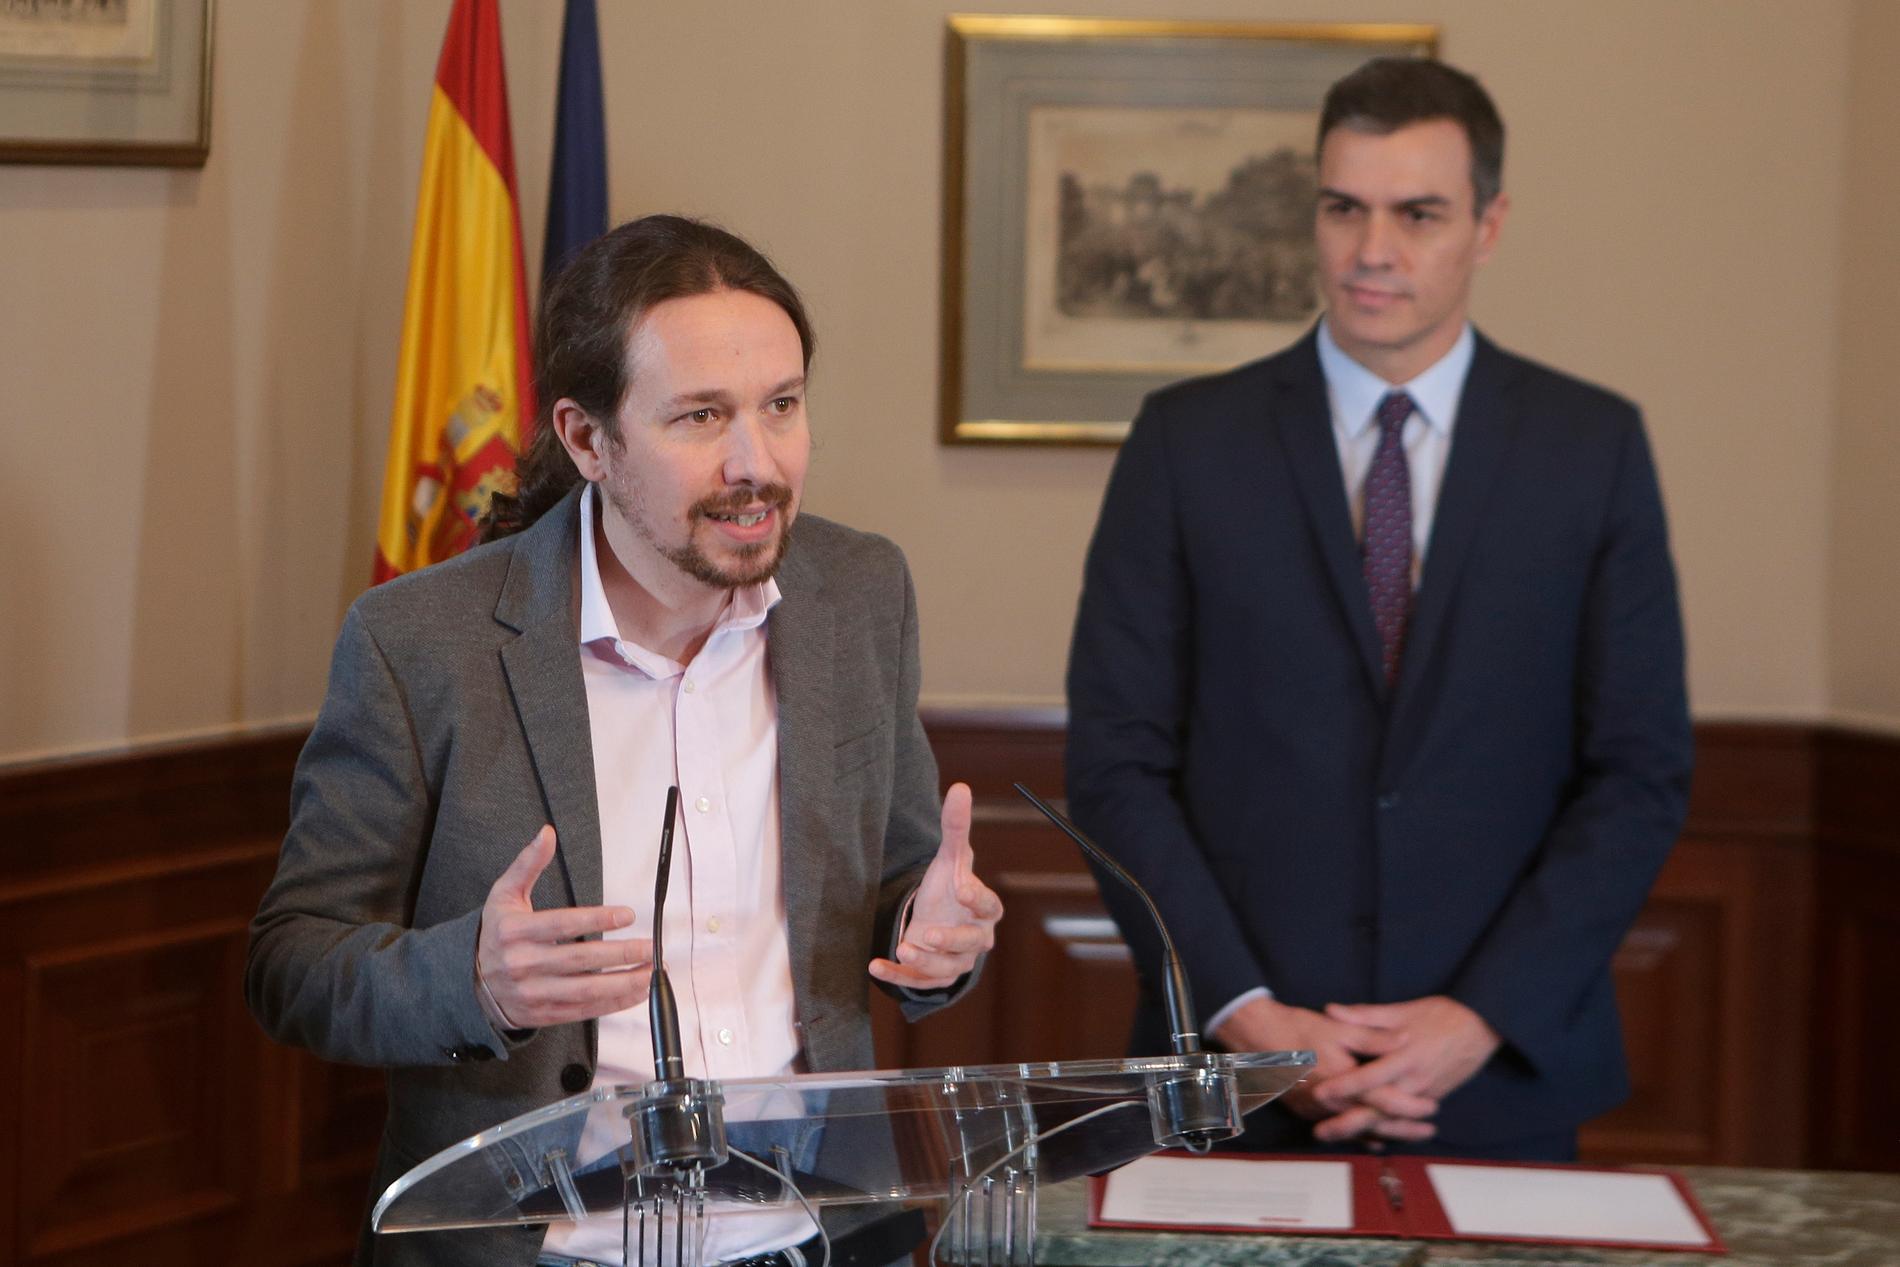 Unidas Podemos-ledaren Pablo Iglesias kallar vänsterpakten "ett vaccin mot extremhögern". Tillförordnade premiärministern Pedro Sánchez lyssnar.